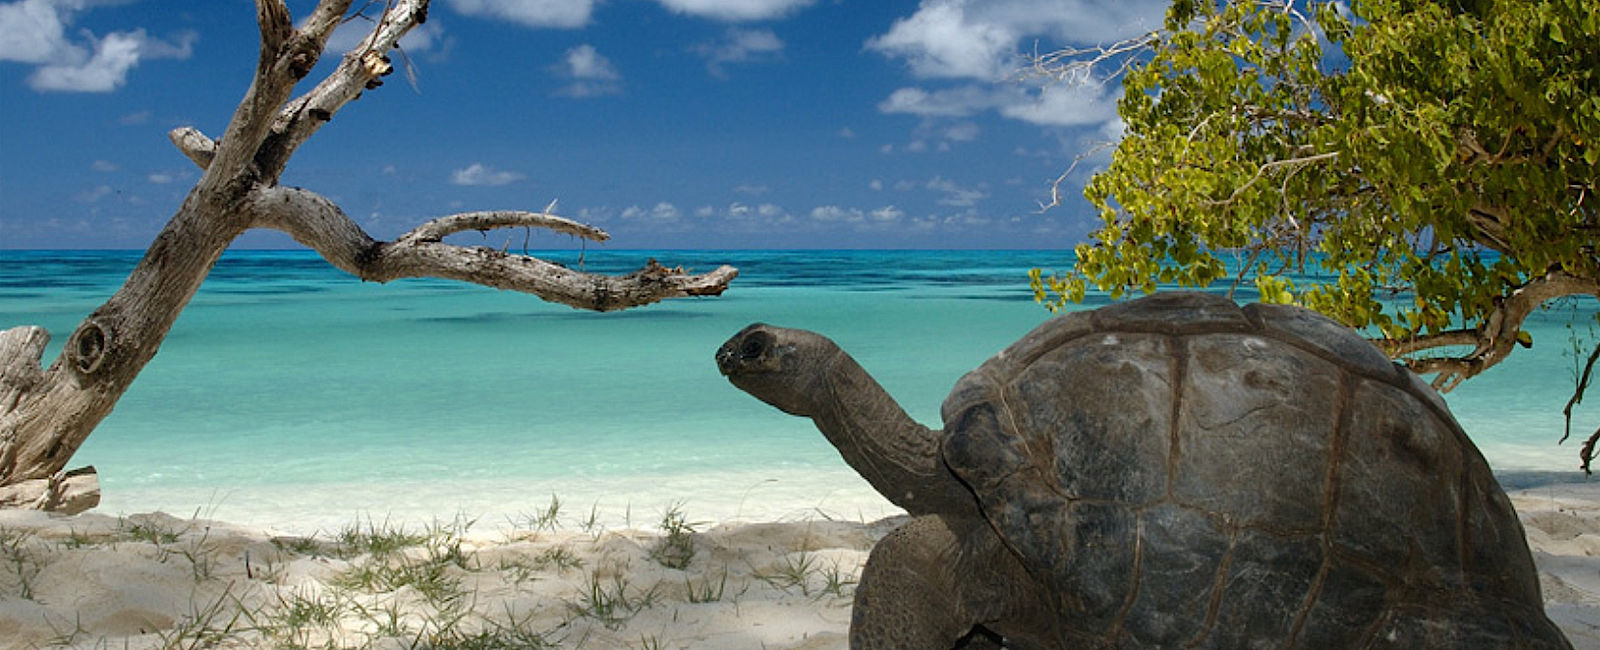 KREUZFAHRT NEWS
 Kreuzfahrt zum Aldabra-Atoll 
